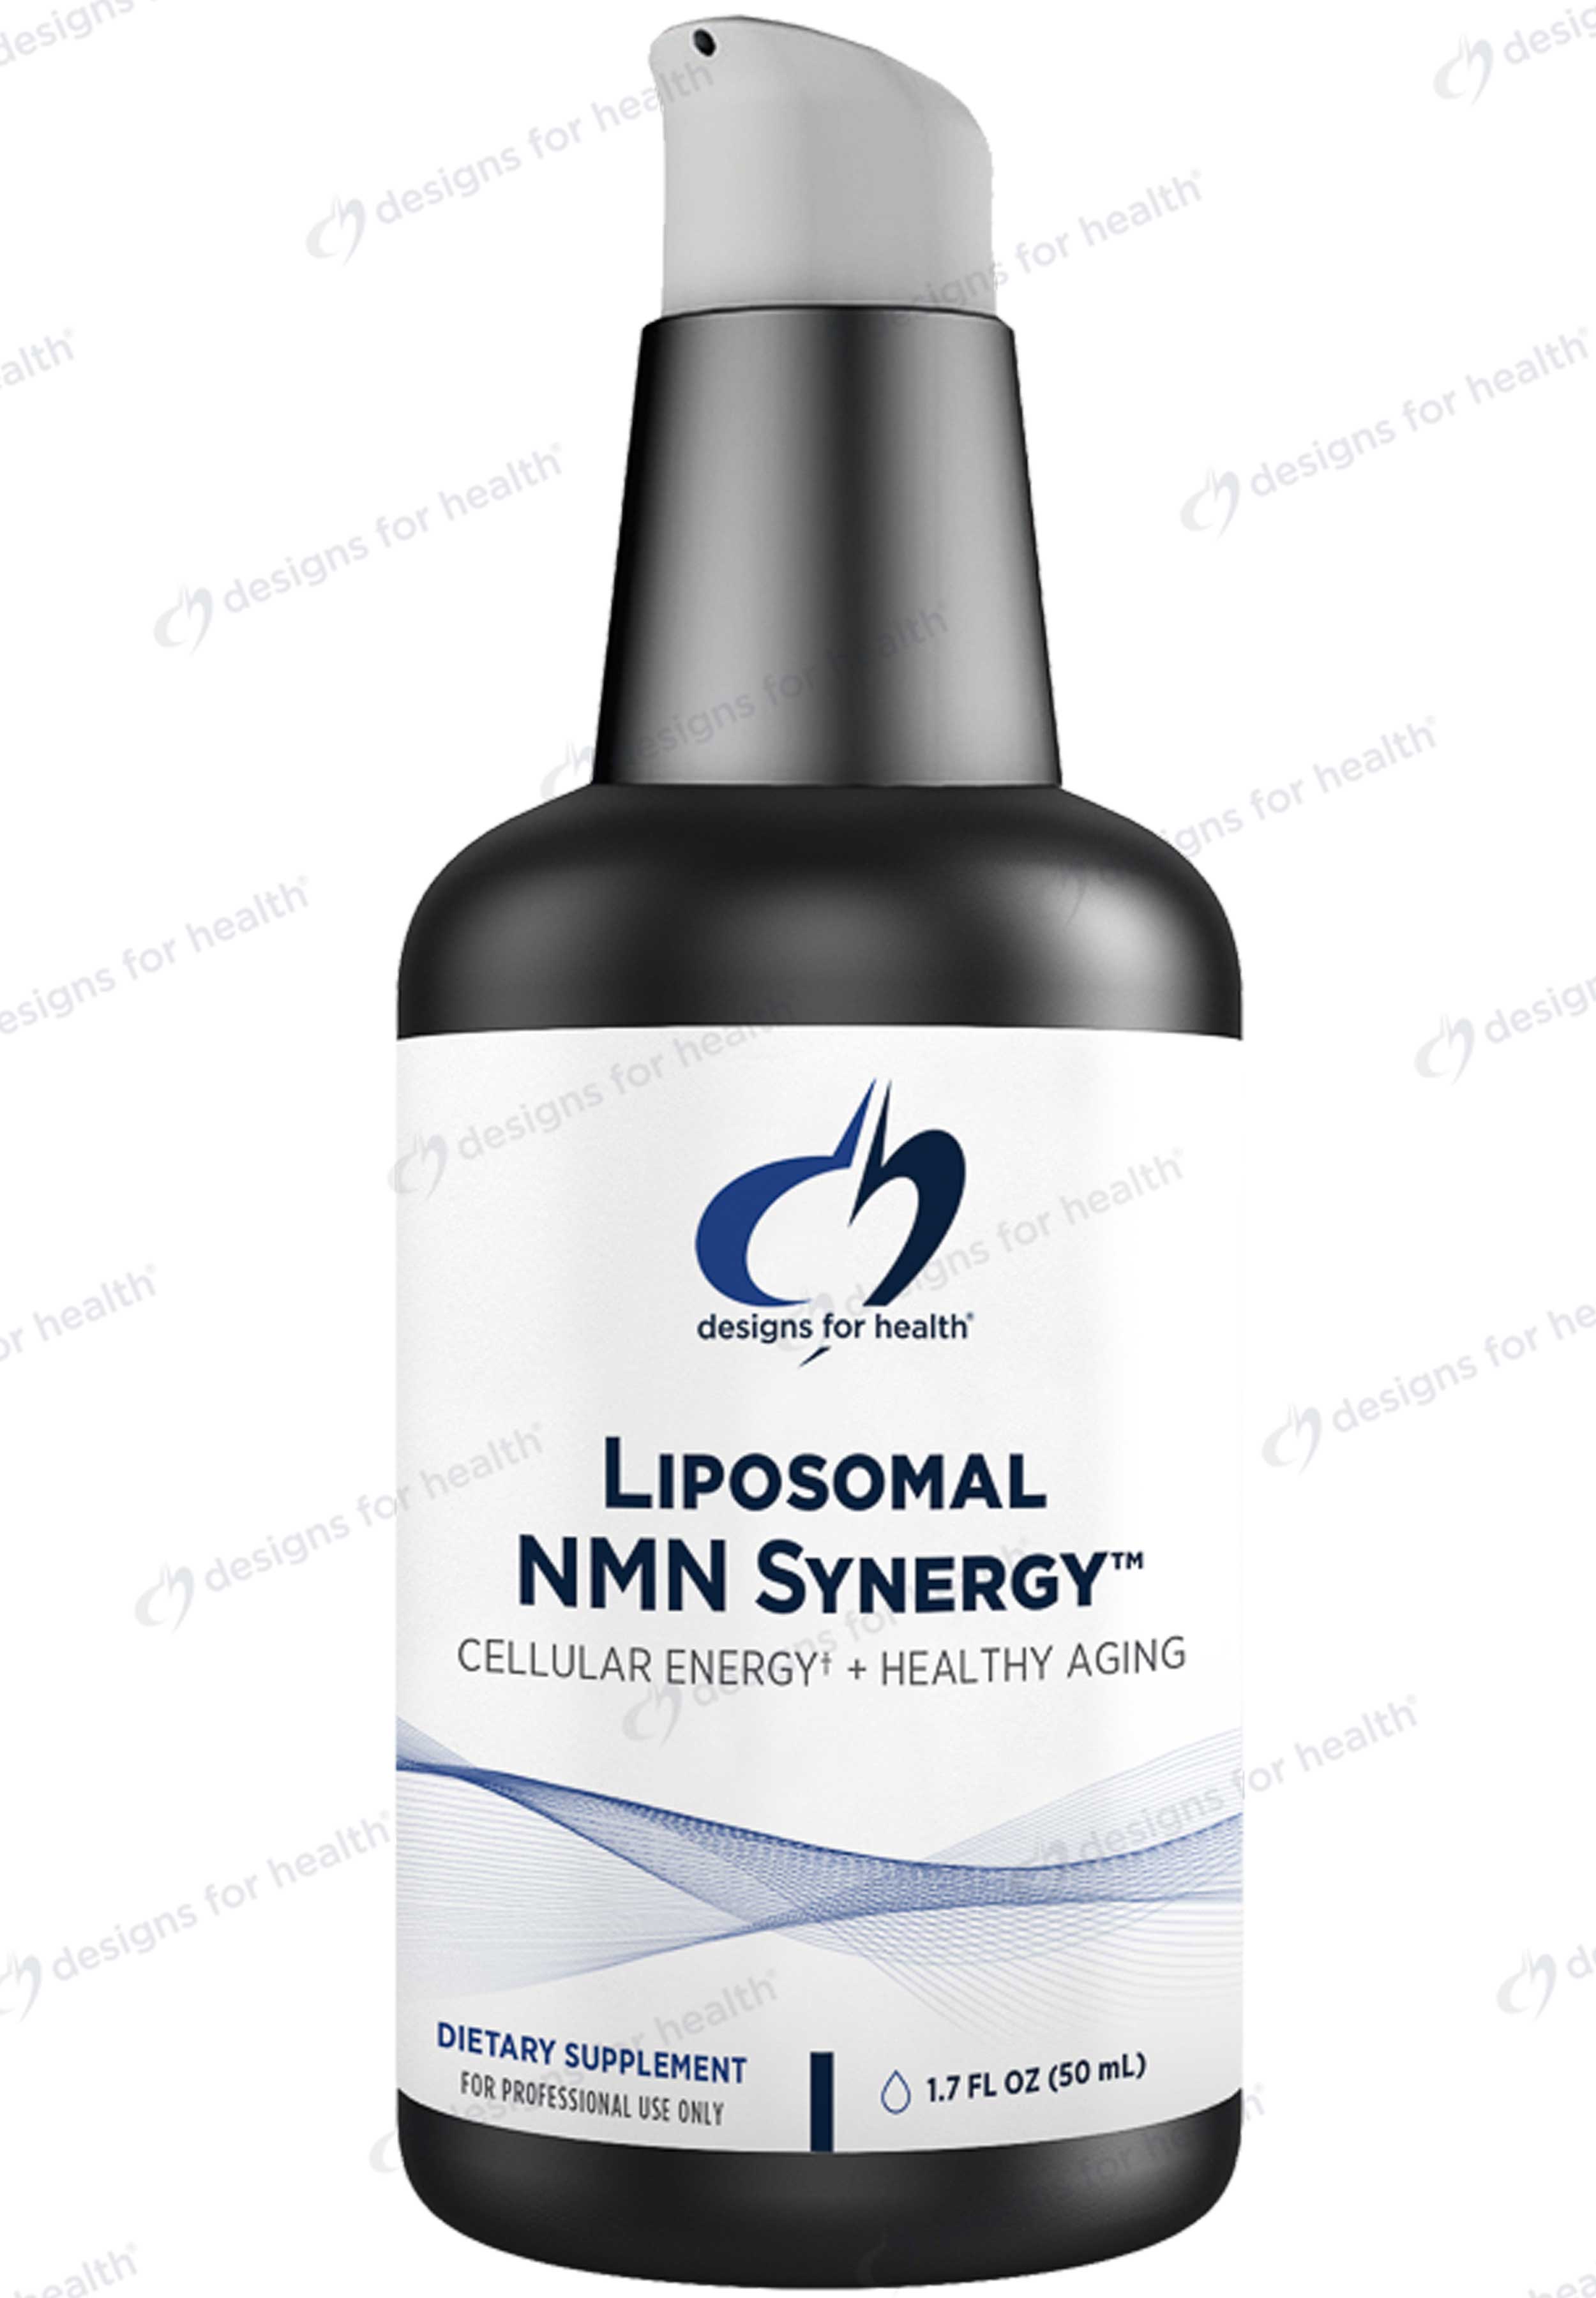 Designs for Health Liposomal NMN Synergy™